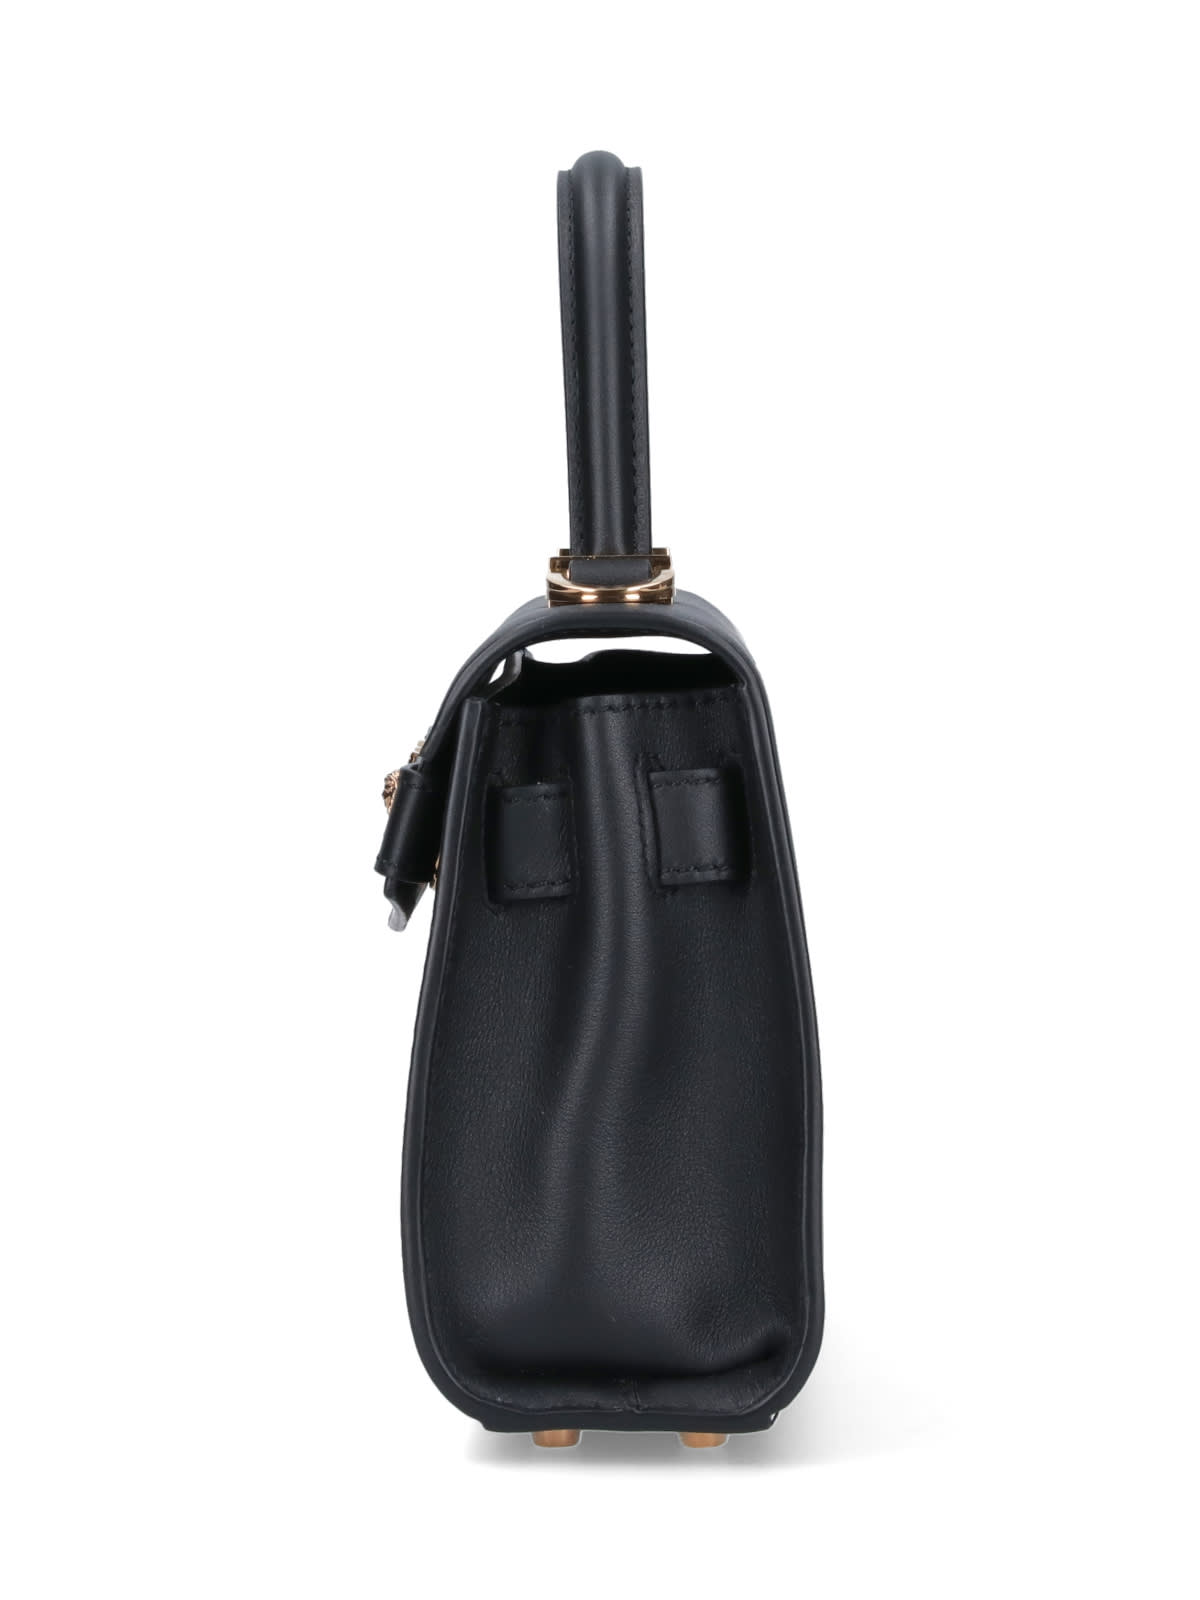 Shop Versace Medusa 95 Small Handbag In Black